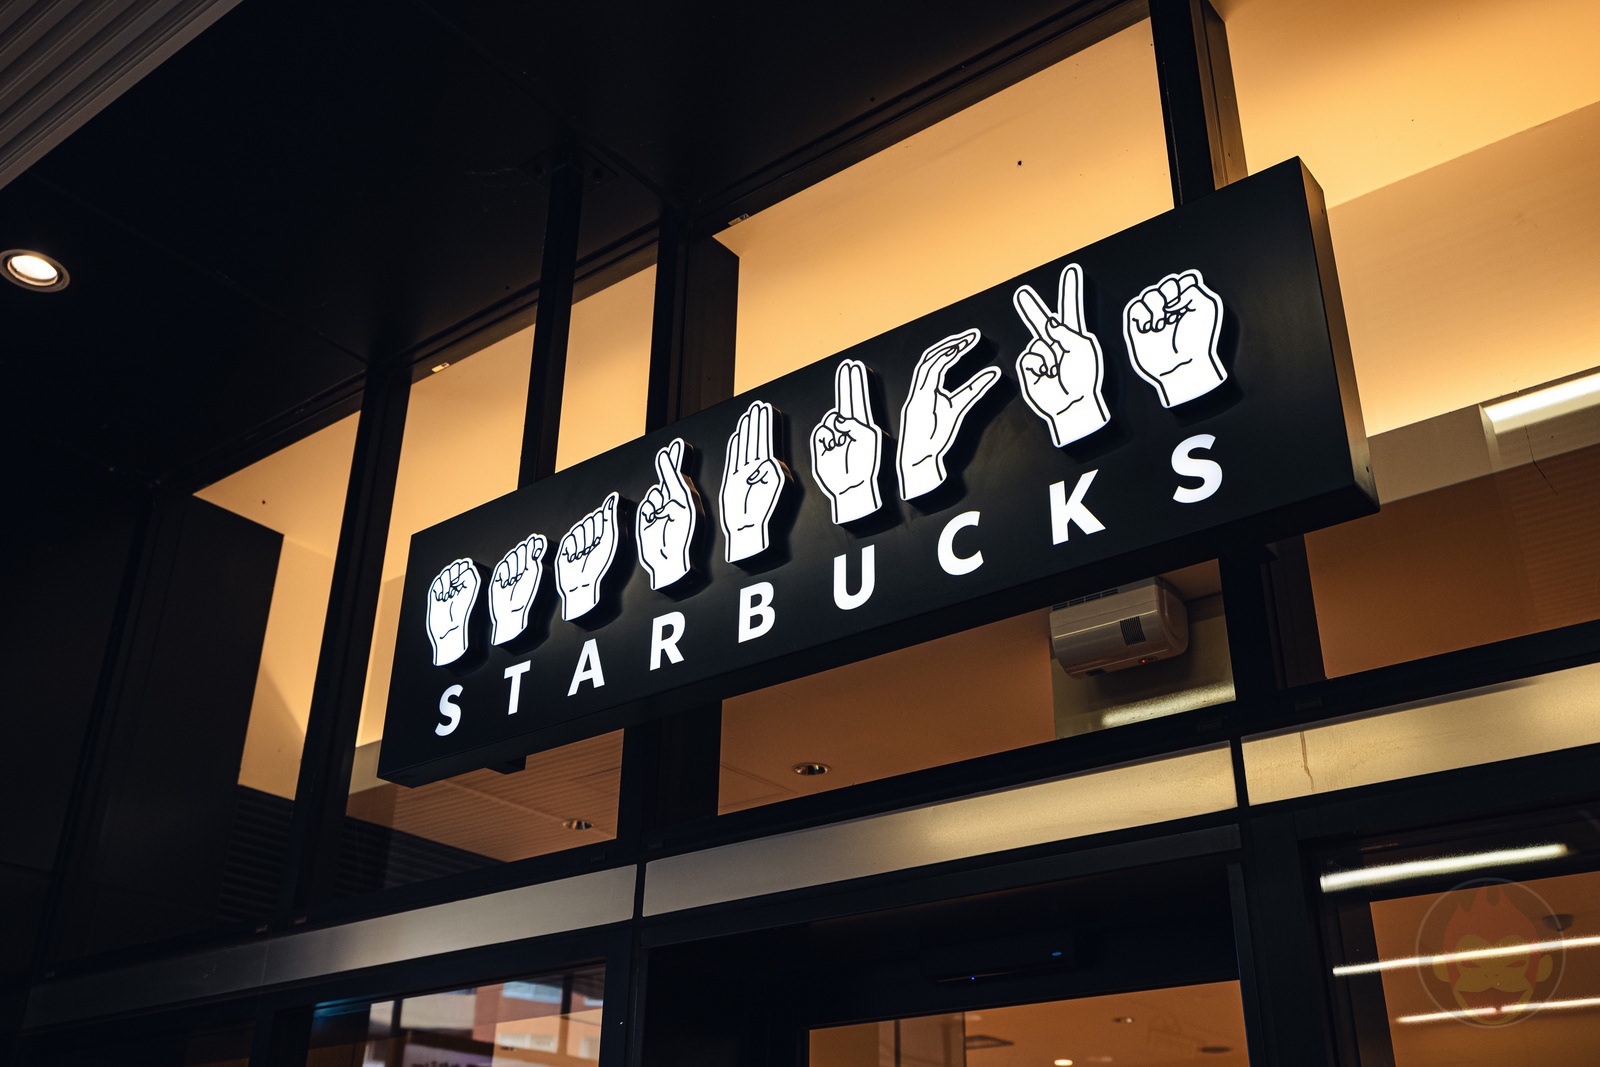 Sign Language Starbucks in japan 03